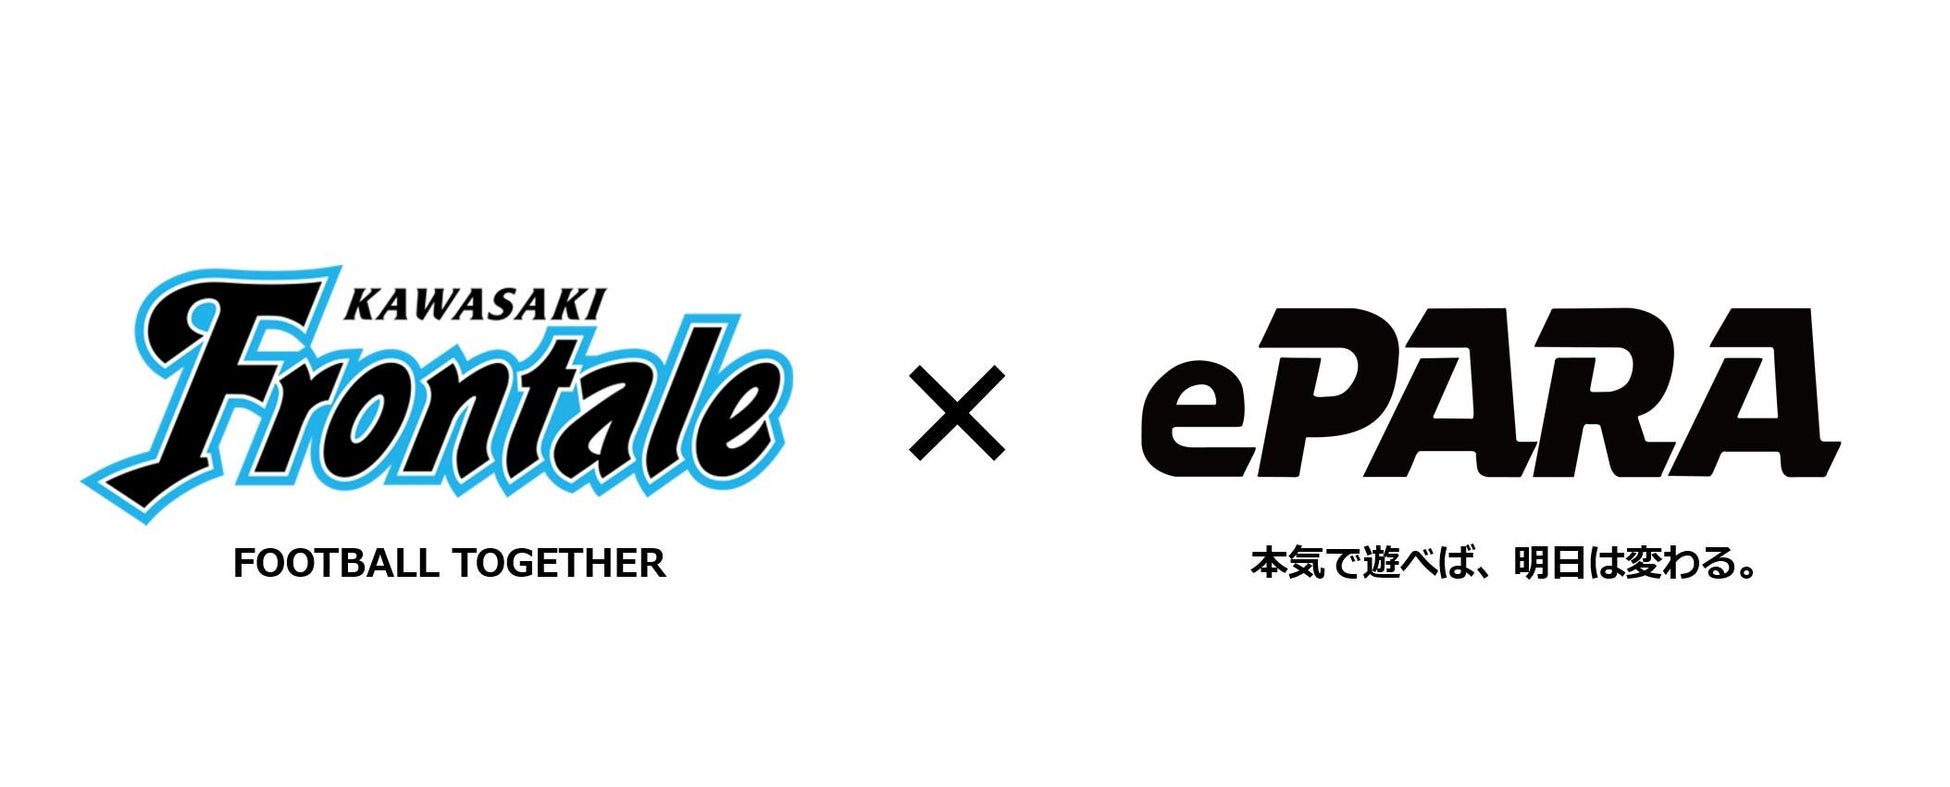 ePARA、川崎フロンターレ主催「かわさきSDGsランド」でバリアフリーeスポーツ体験企画を実施